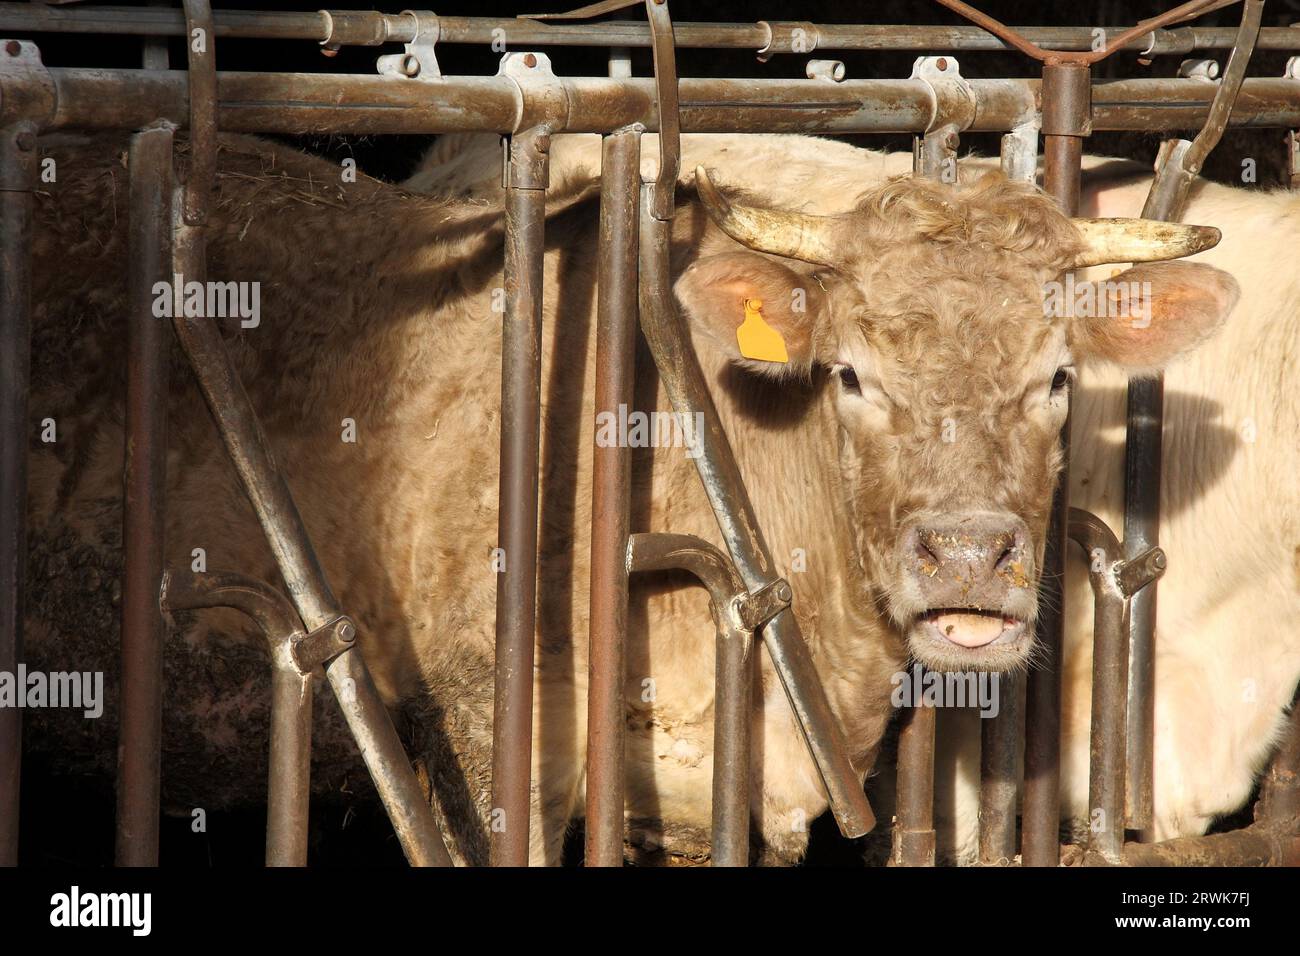 Kurzhörner-Rinder in einer stabilen Box, ein Porträt Stockfoto